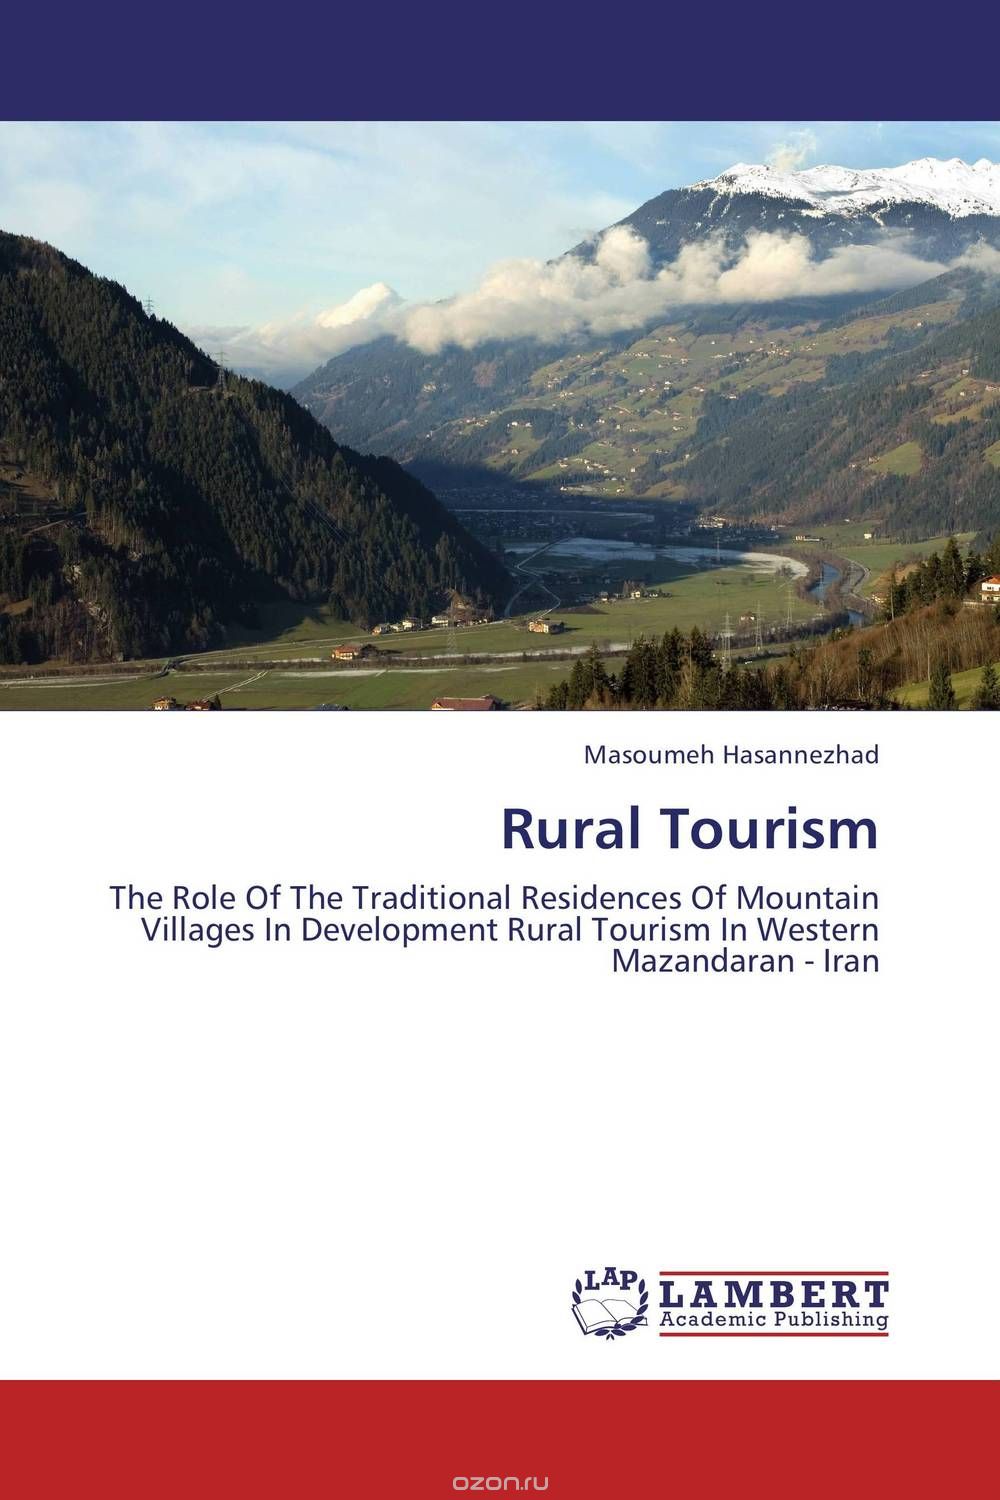 Скачать книгу "Rural Tourism"